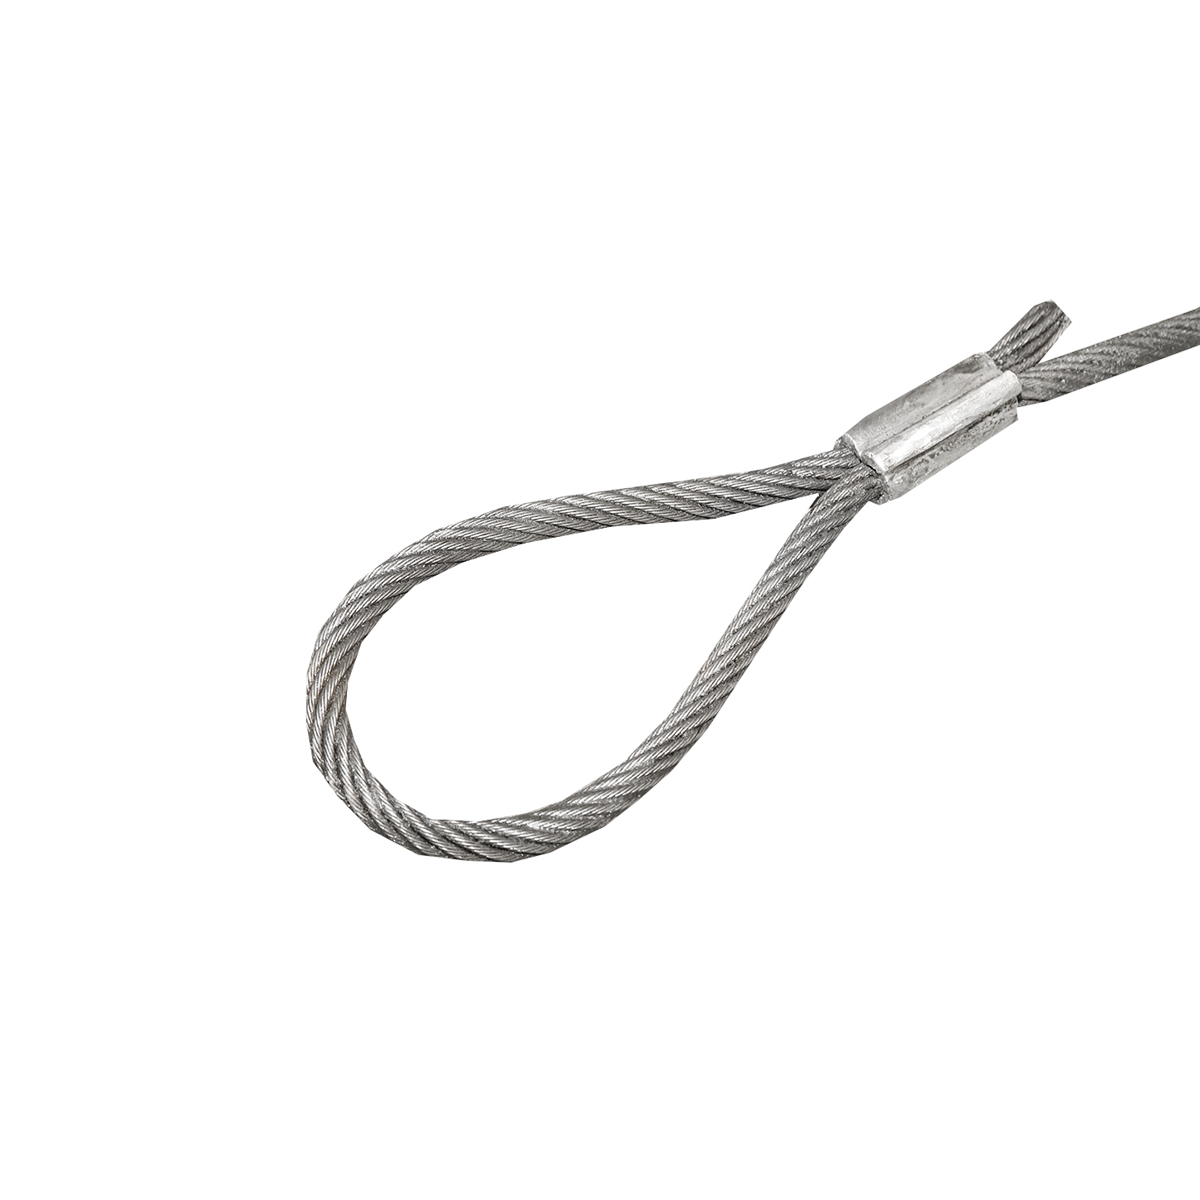 Cablu/sufa troliu din otel cu grosime de 16mm si lungime 4m cu inele pentru tractat sau ridicat